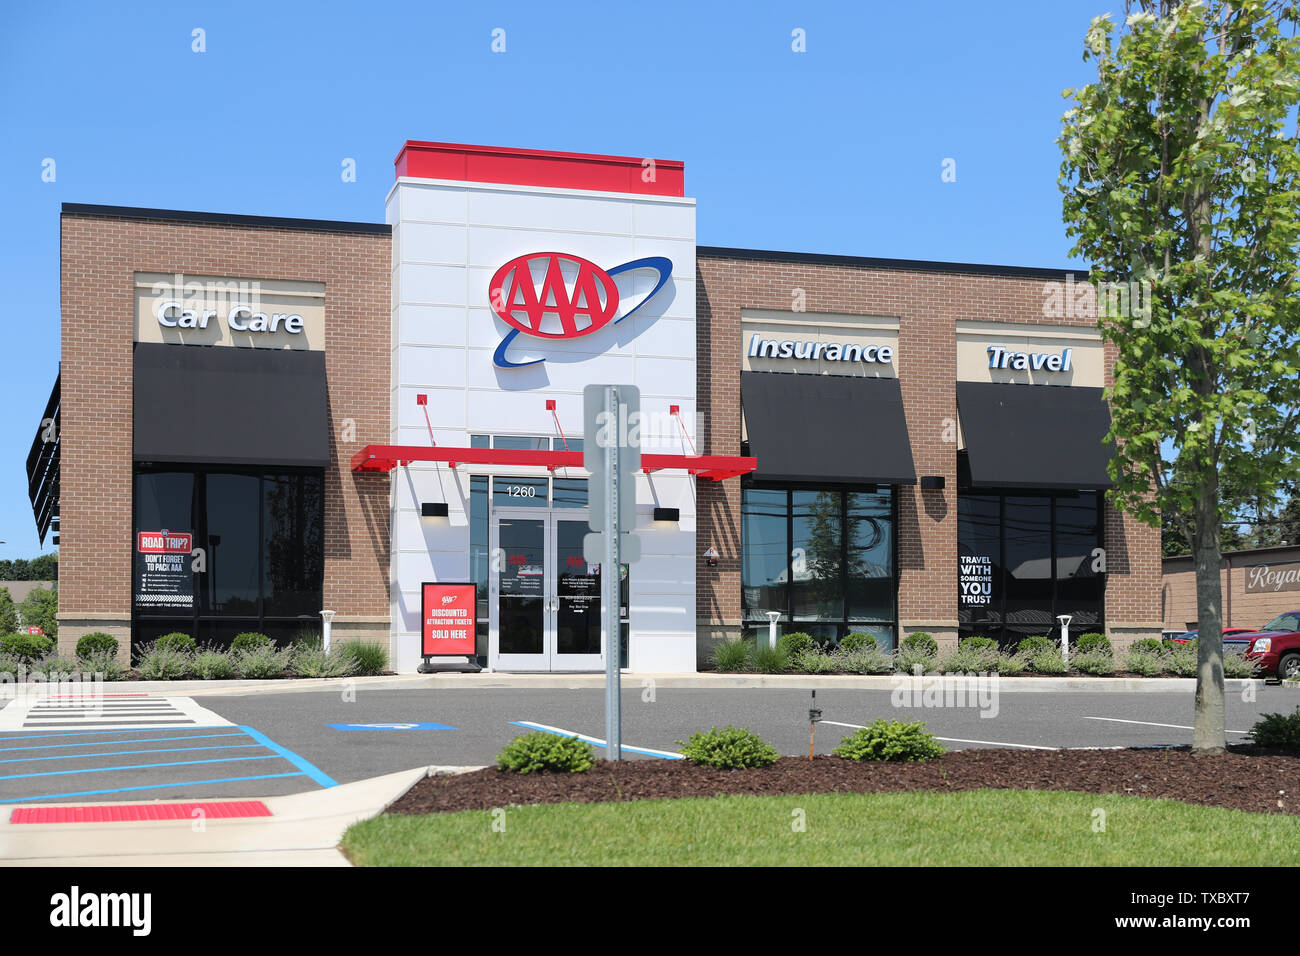 La Princeton New Jersey - le 23 juin 2019:Logo pour l'American Automobile Association (AAA) à l'extérieur d'un bâtiment de bureaux de l'entreprise - Image Banque D'Images